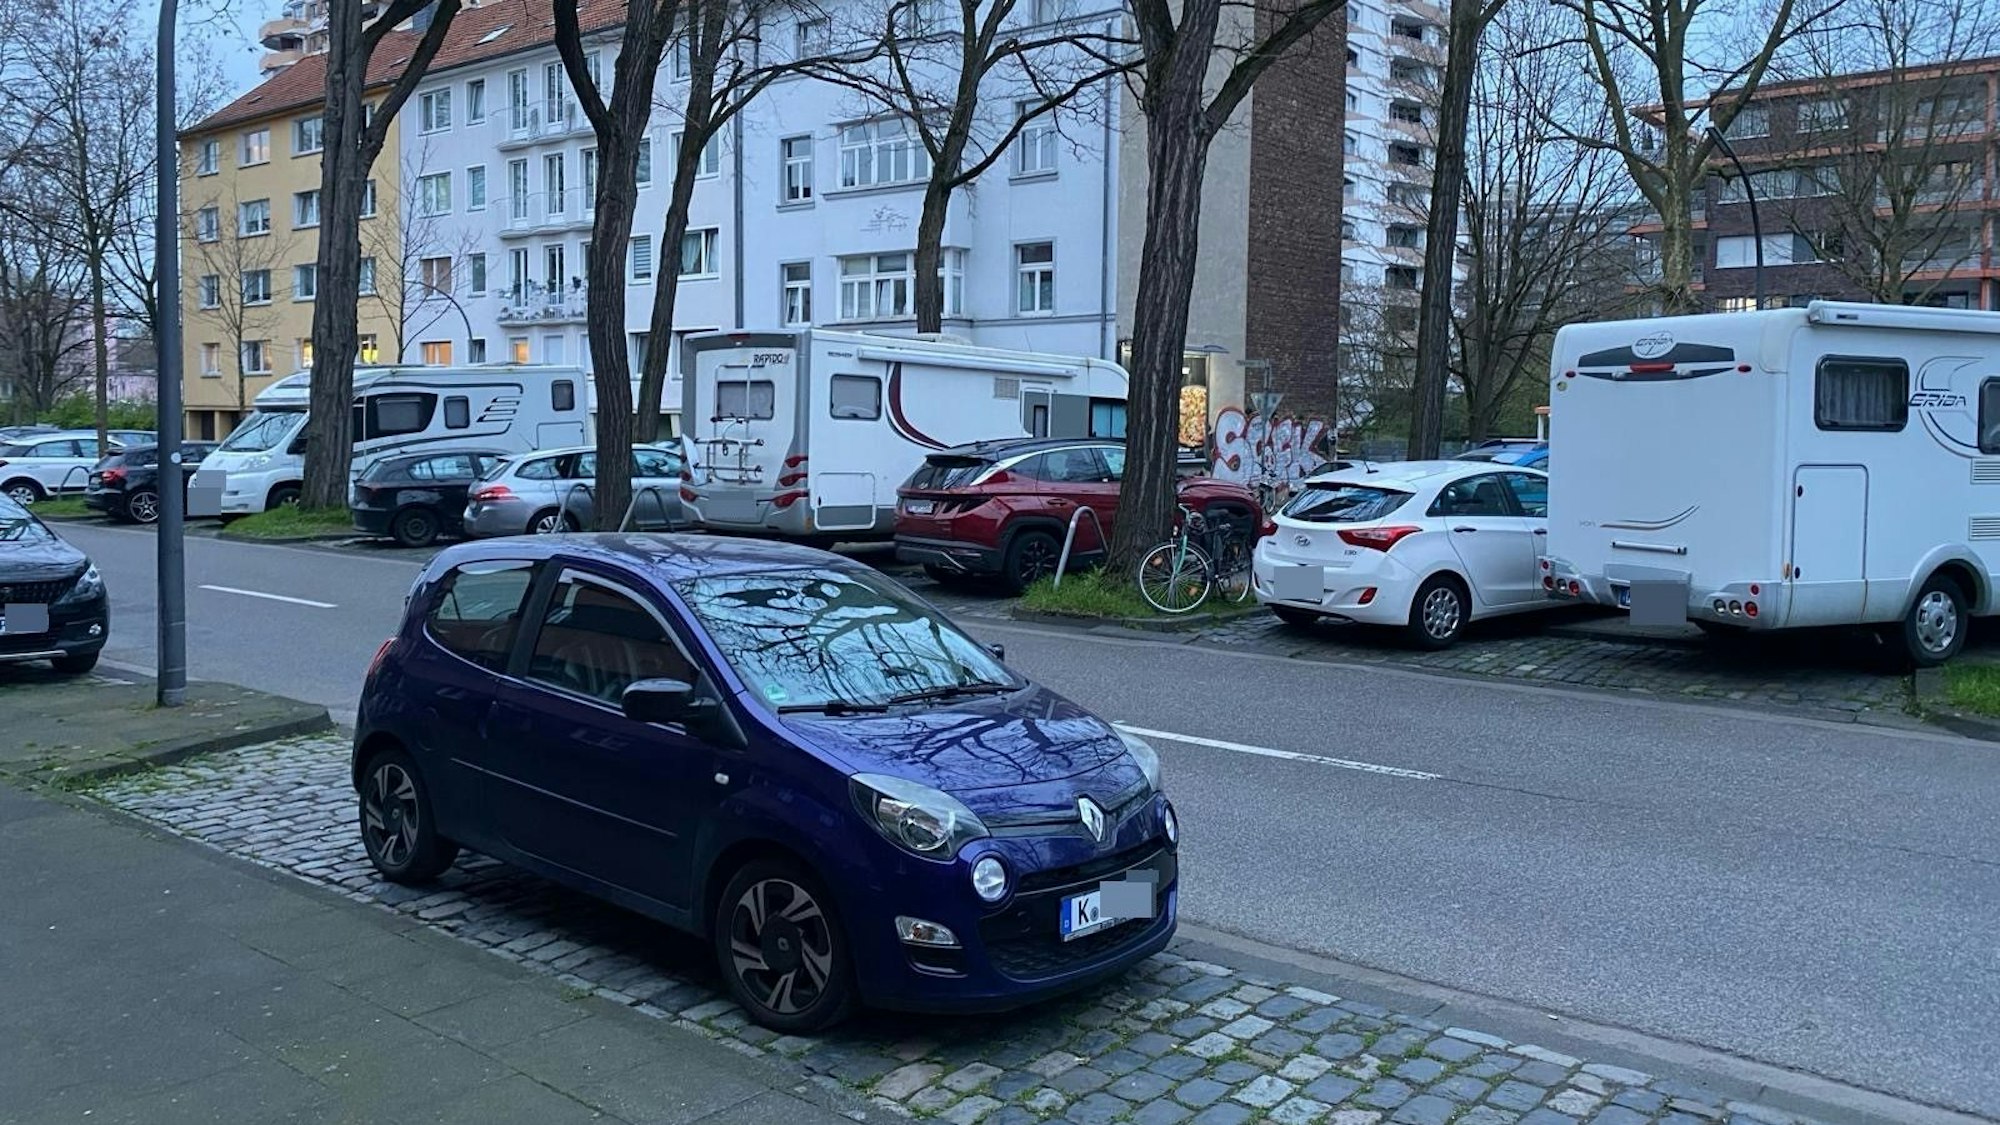 Wohnmobile parken in Köln.